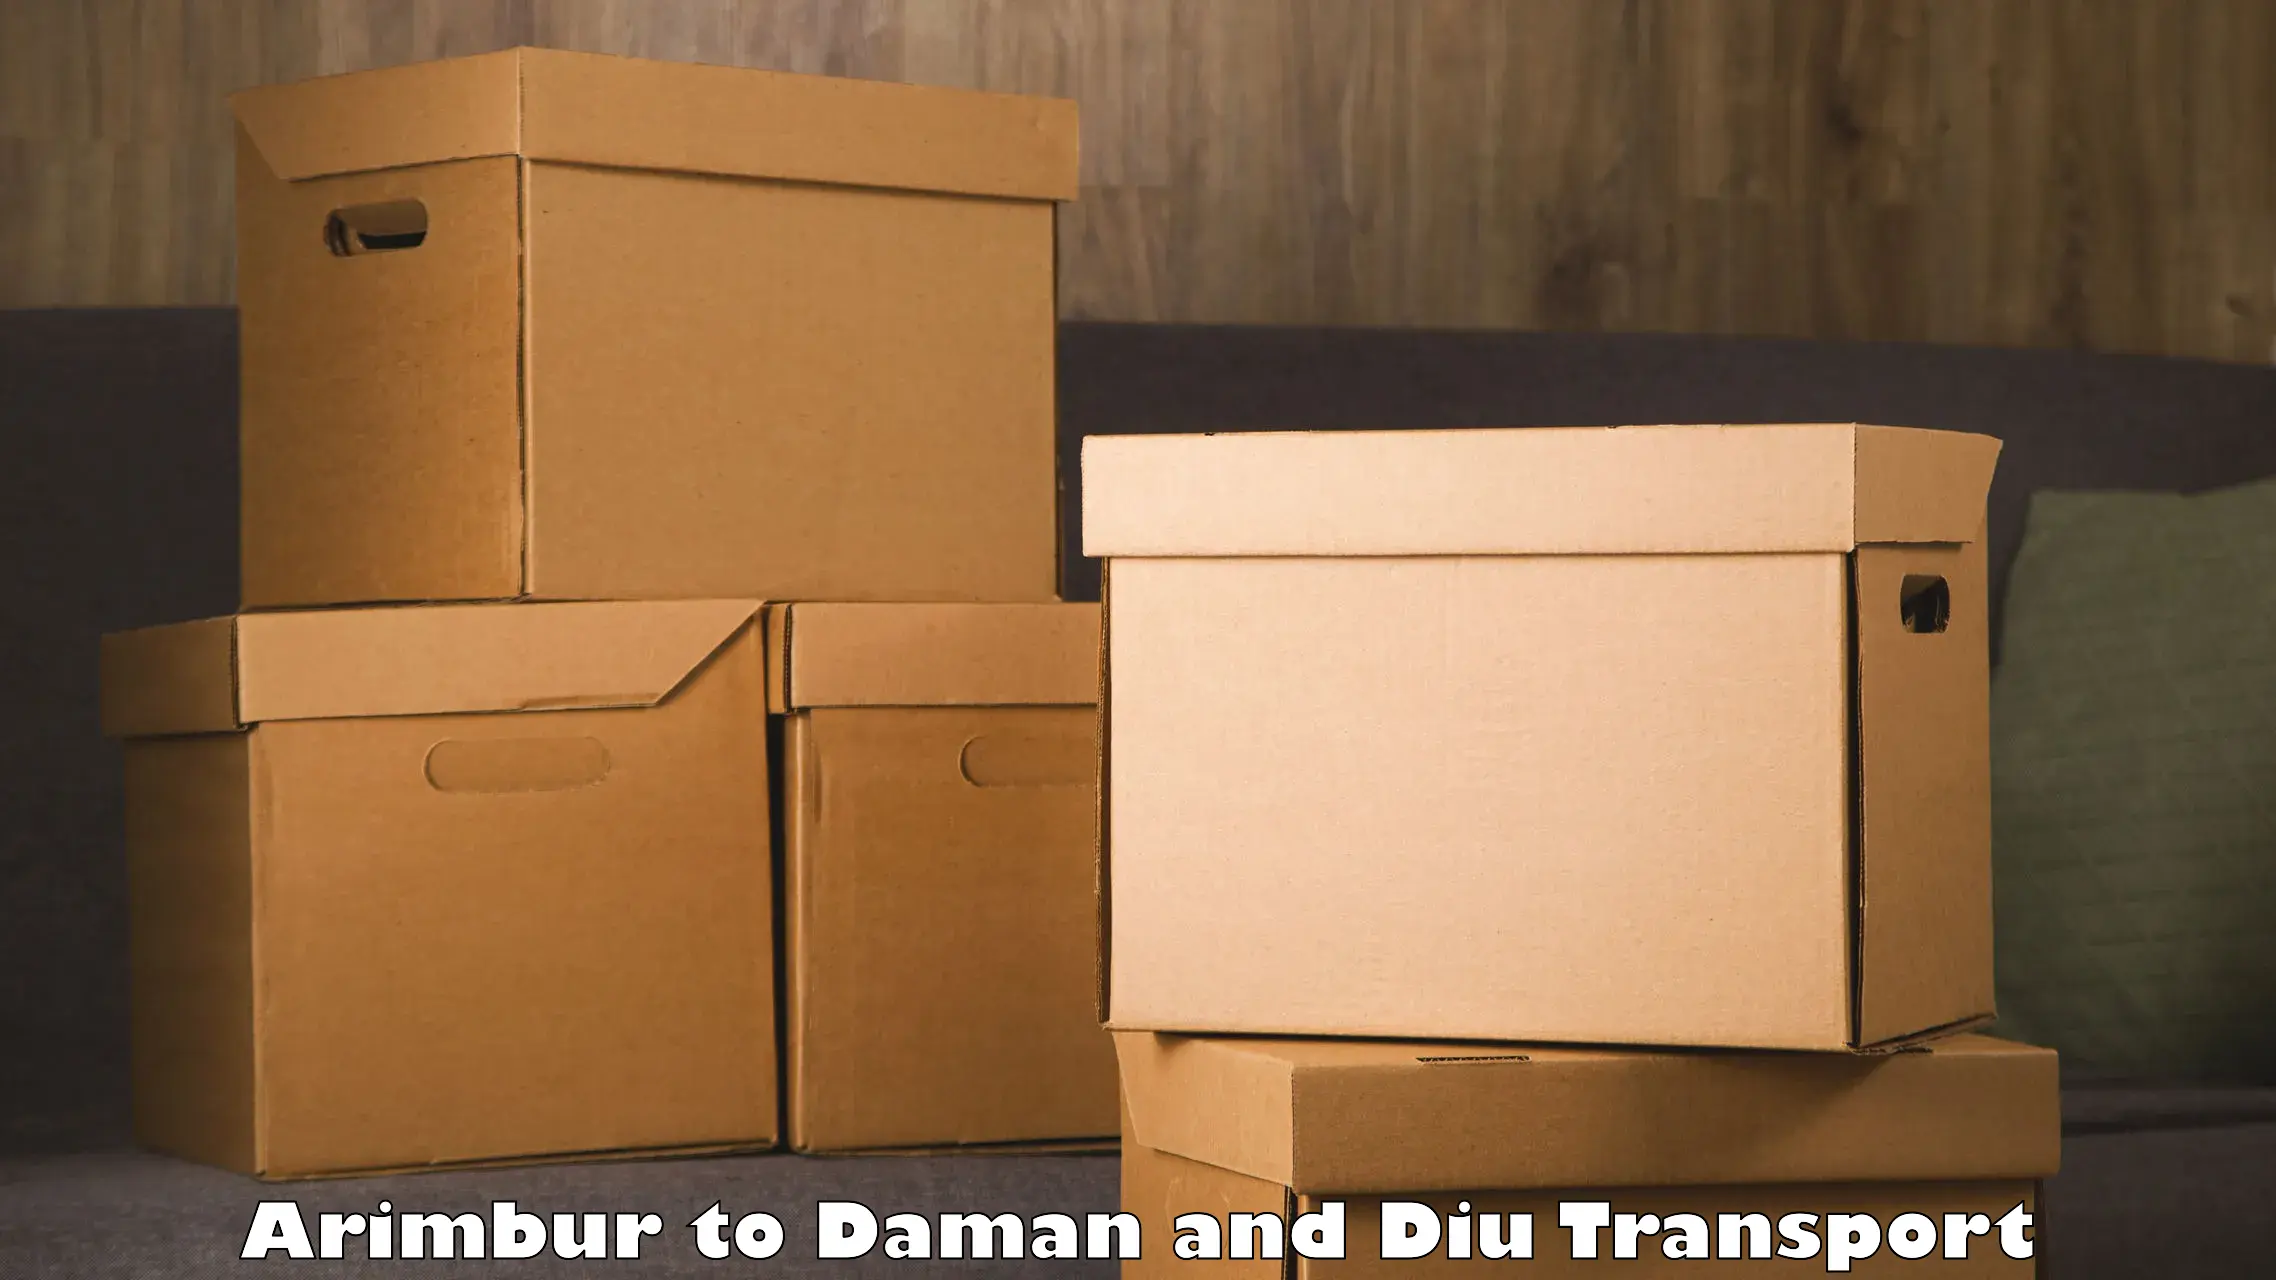 Online transport service Arimbur to Daman and Diu